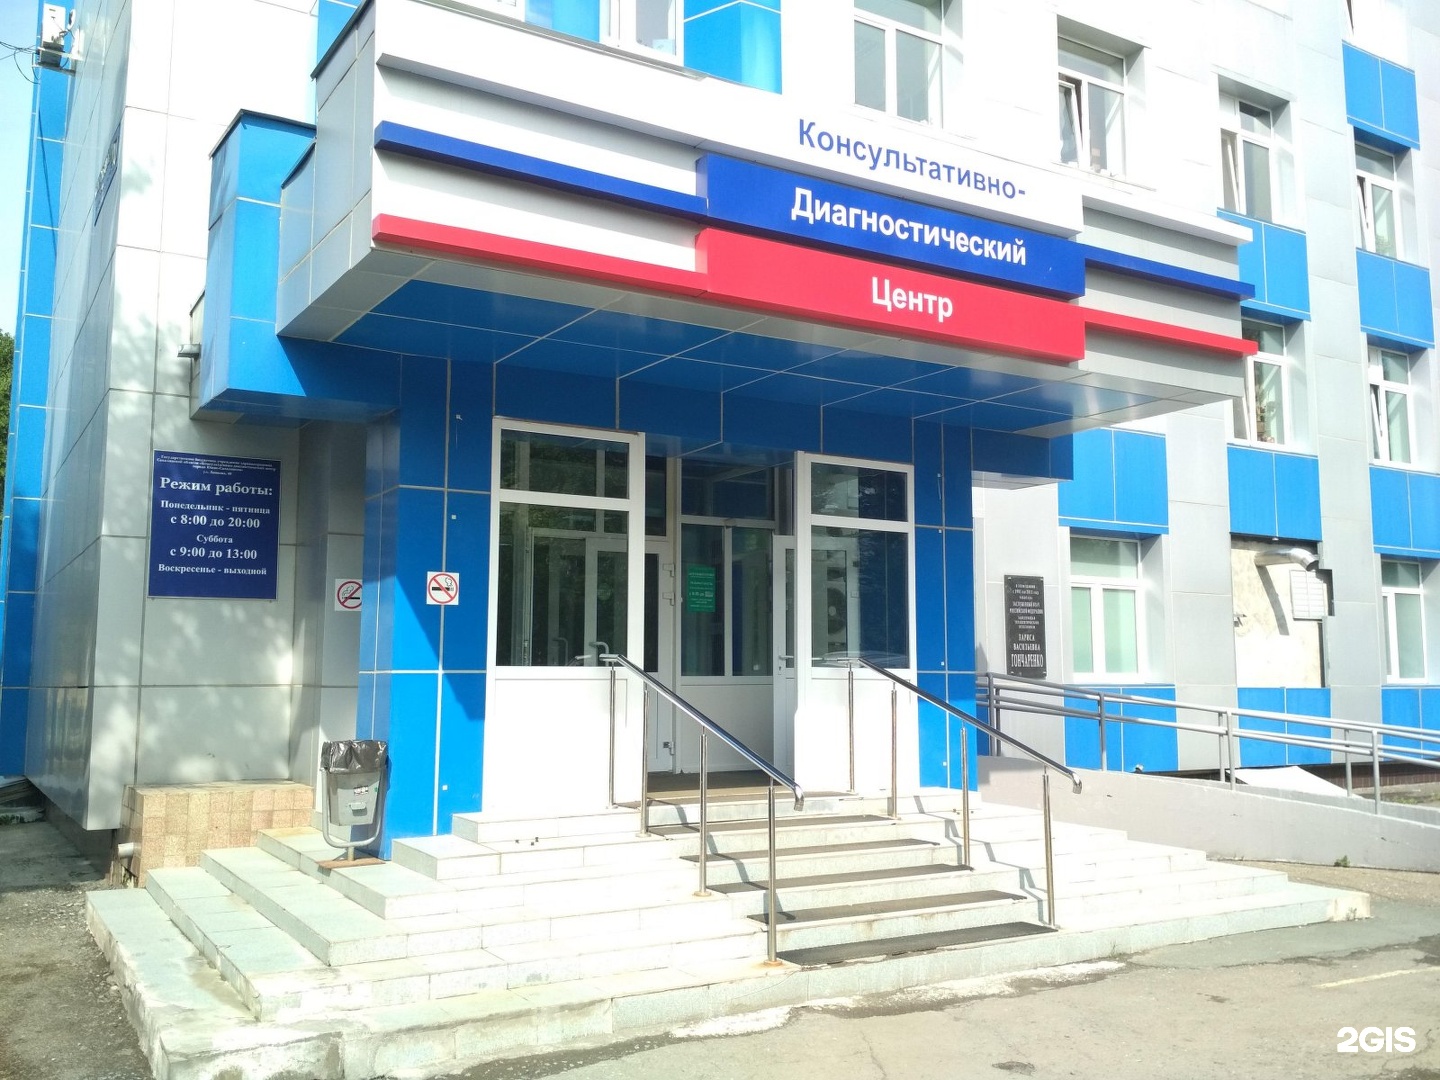 Консультативно-диагностический центр, Южно-Сахалинск